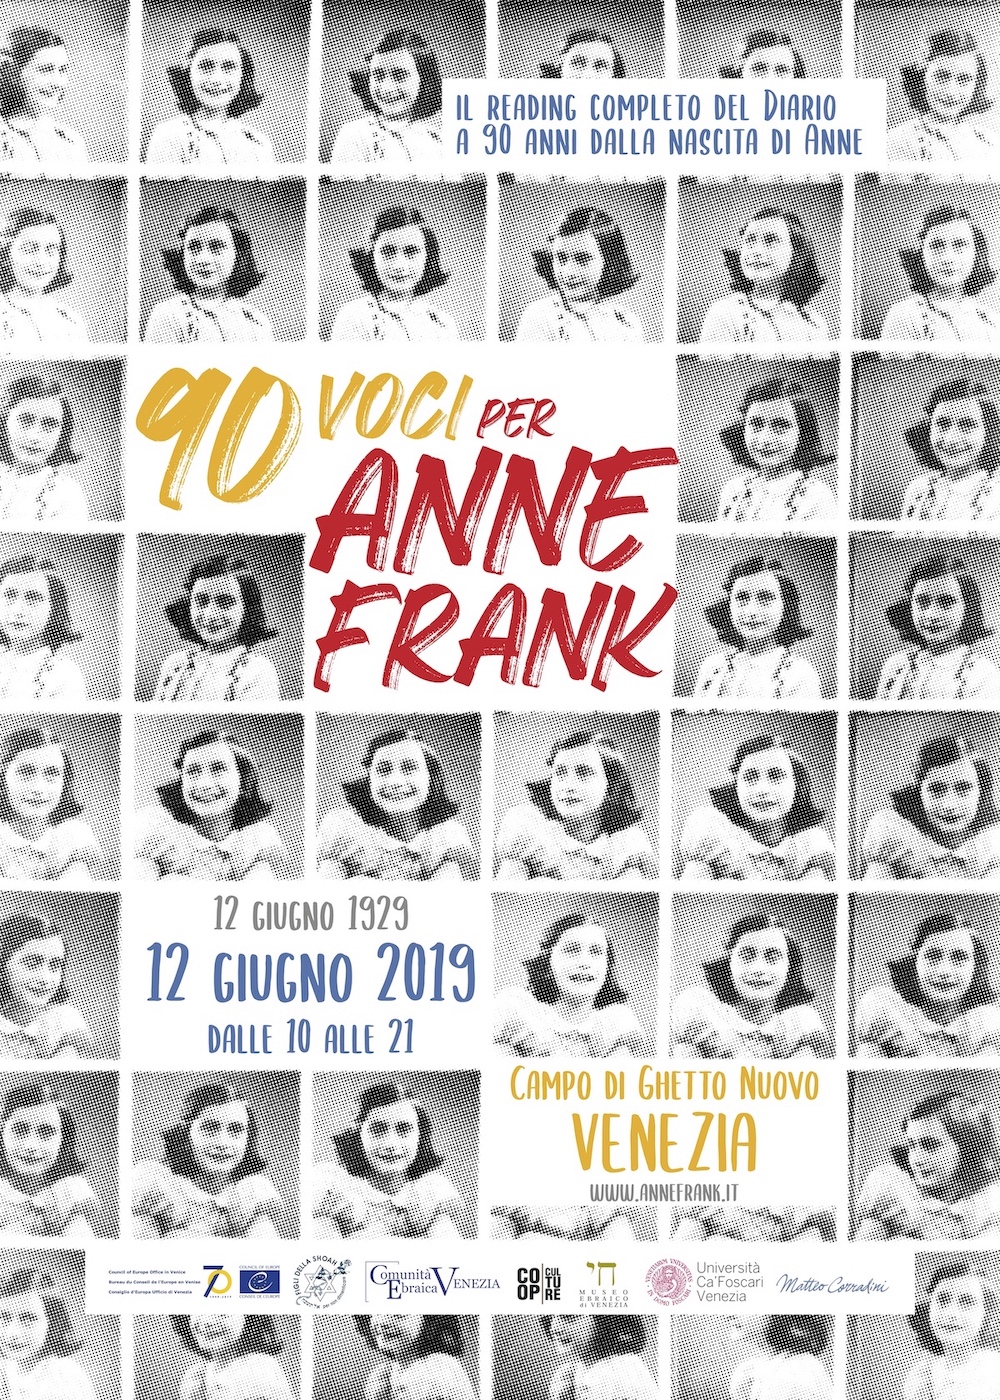 90 voci per Anne Frank • Il comunicato stampa 01